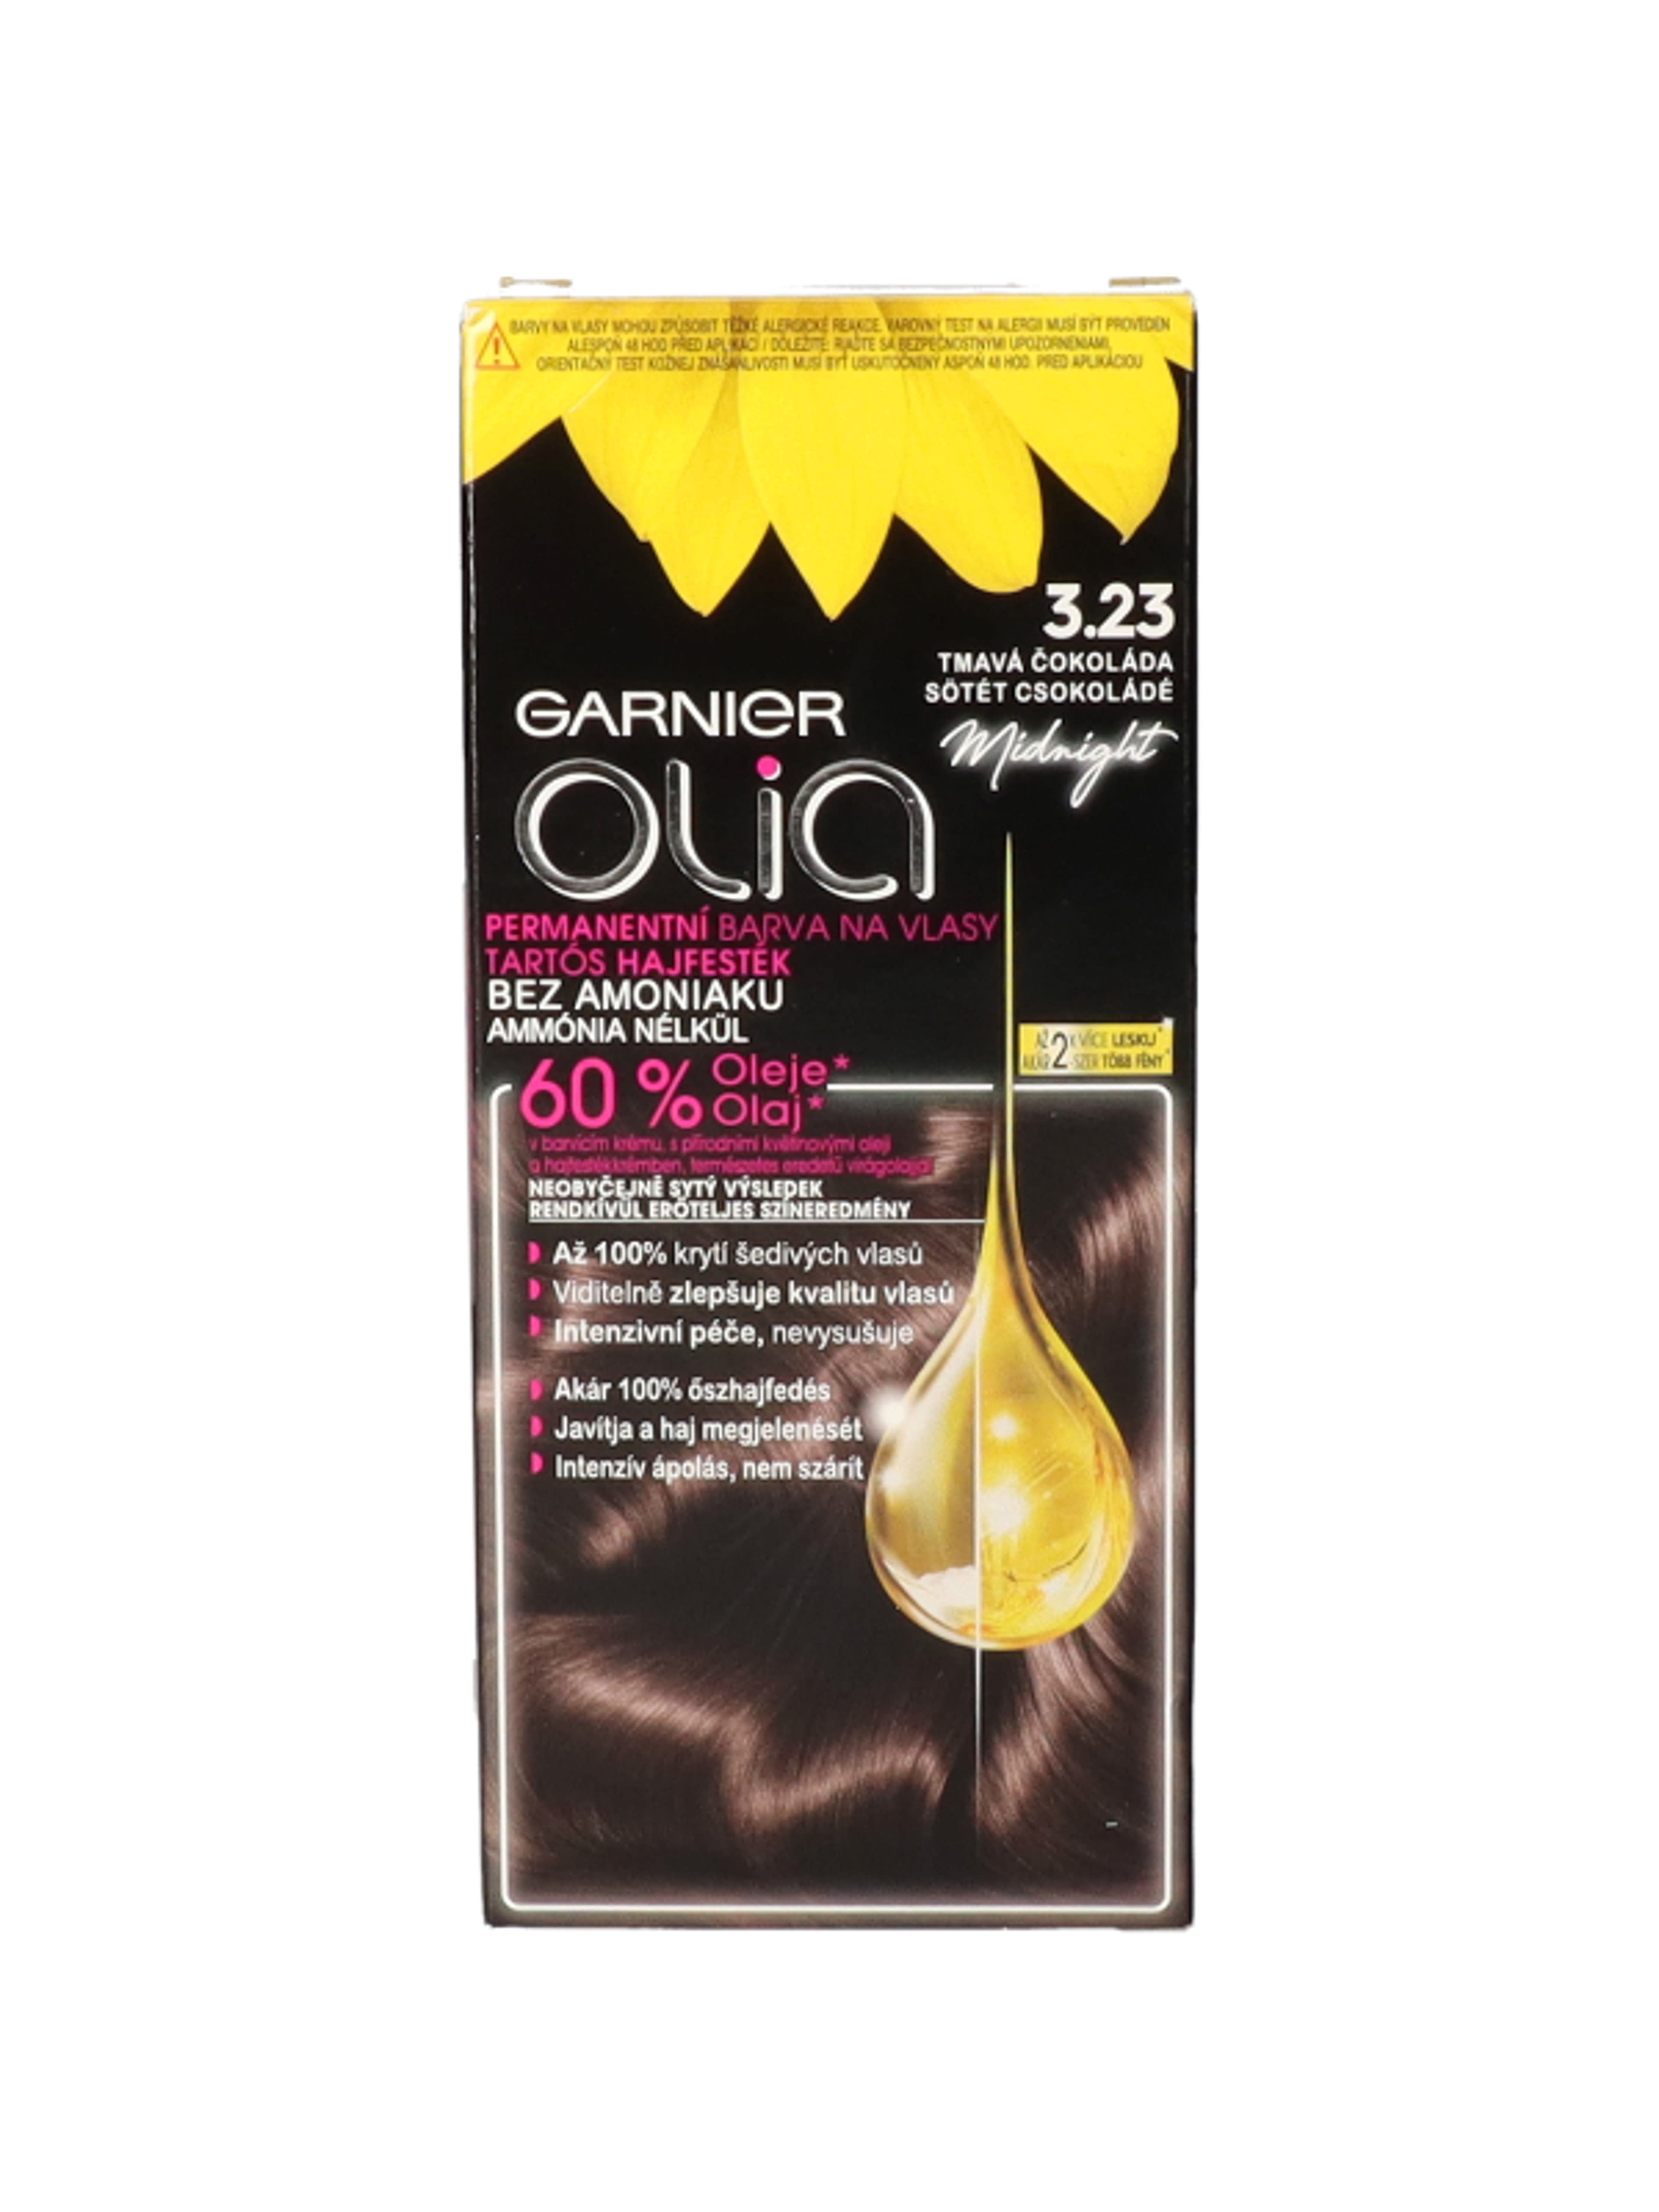 Garnier Olia tartós hajfesték 3.23 Sötét csokoládé - 1 db-1